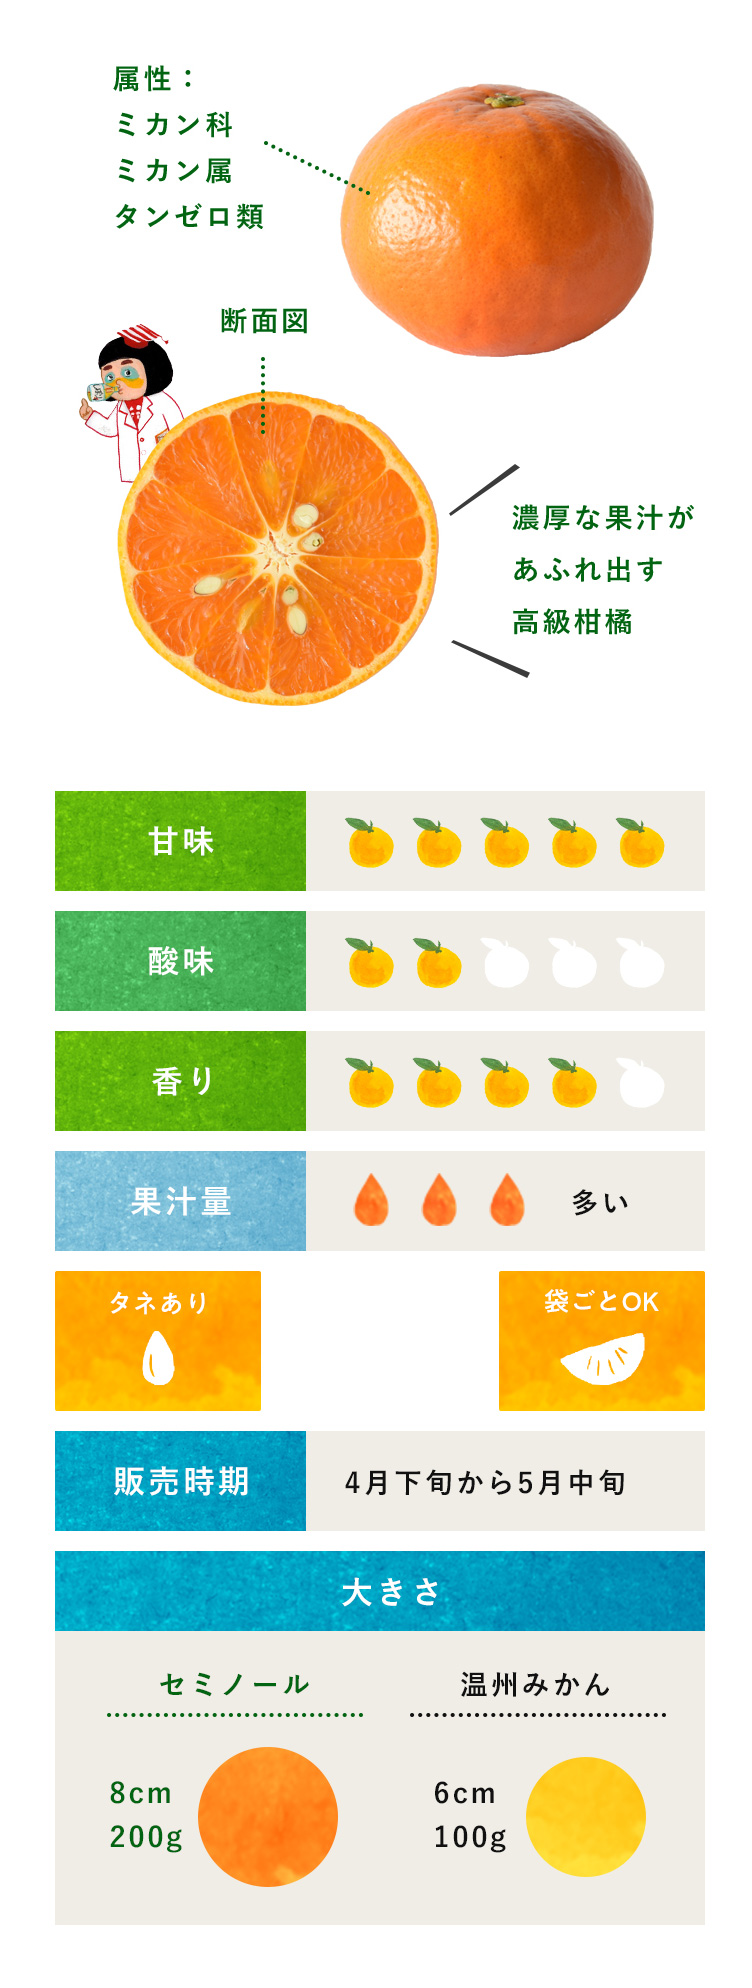 セミノール・柑橘のことなら「みかんな図鑑」｜伊藤農園 | 伊藤農園のみかんな図鑑